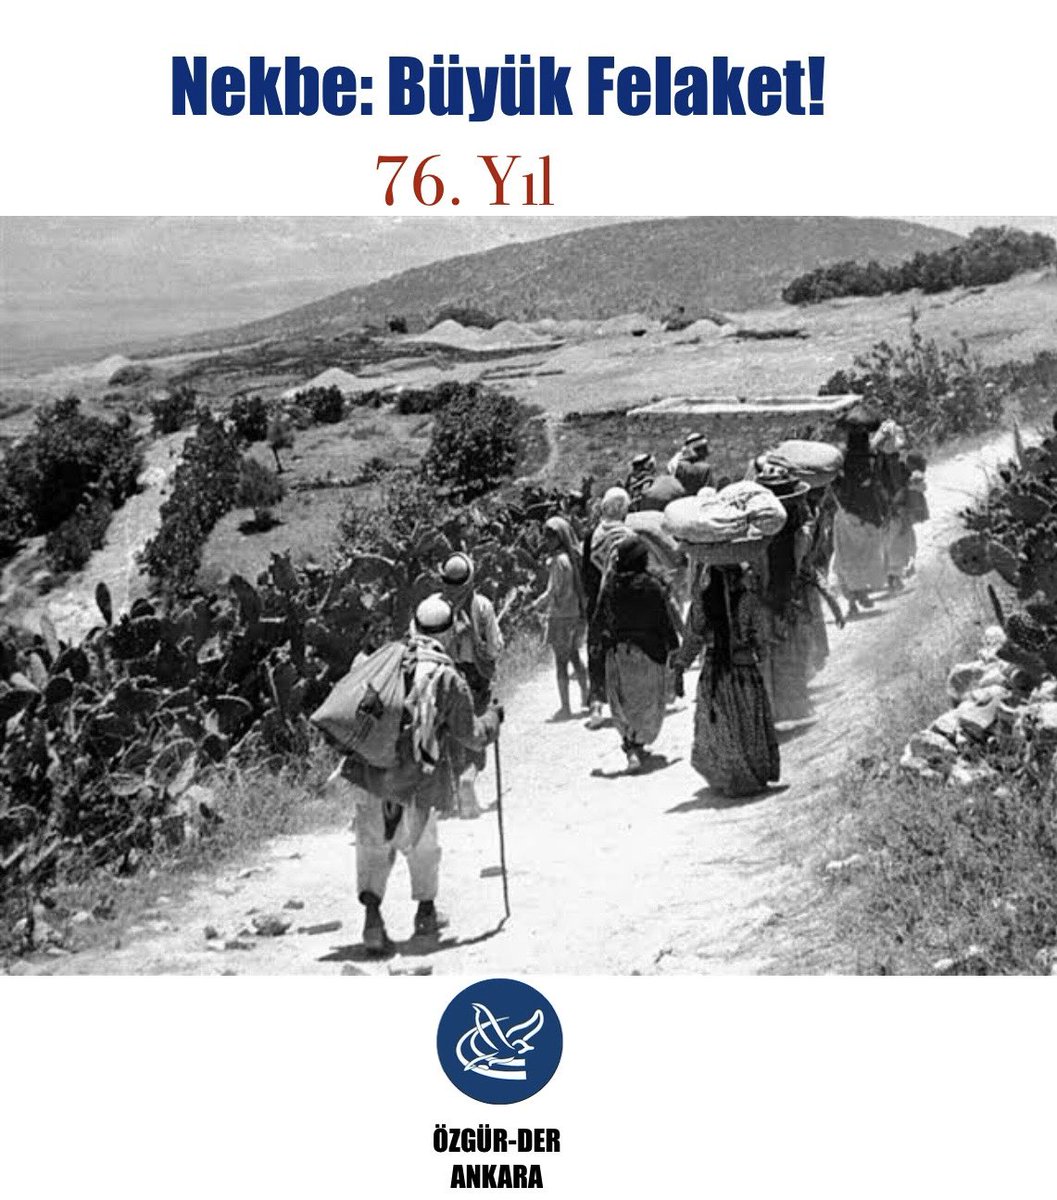 Bugün “Büyük Felaket” olarak adlandırılan #Nekbe'nin yıldönümü

Filistin halkı 76 yıl önce siyonist işgalciler yüzünden topraklarını terk etmek zorunda kaldı. Yıllardır devam eden işgal ve zulüm bitecek, Filistin özgür olacak!